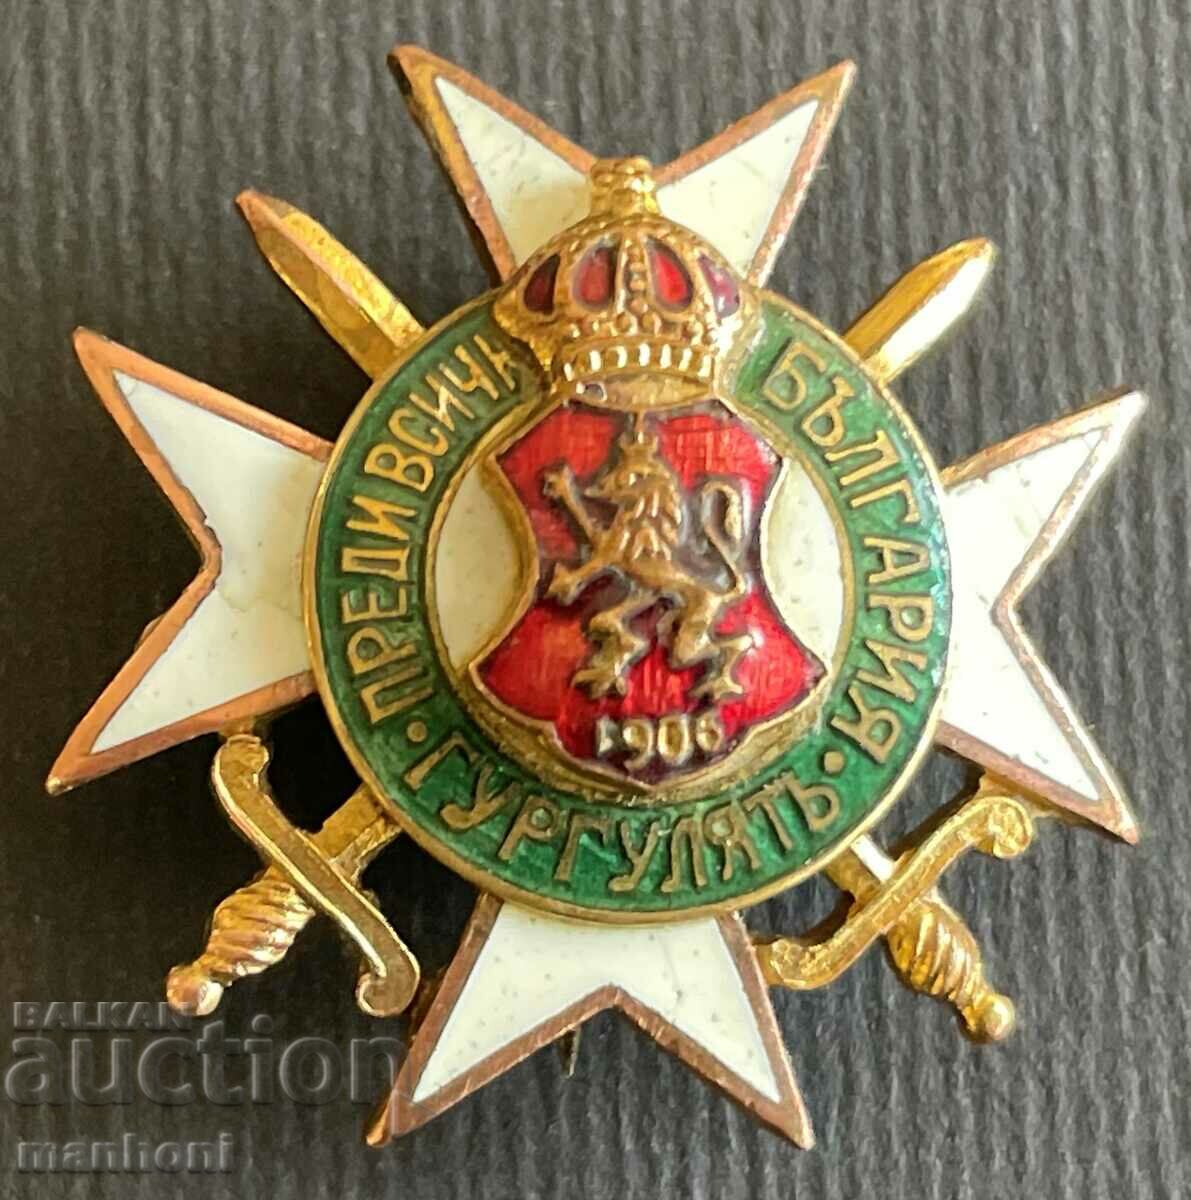 5350 Βασίλειο της Βουλγαρίας Ένωση Εφέδρων Υπαξιωματικών Gurgullyat